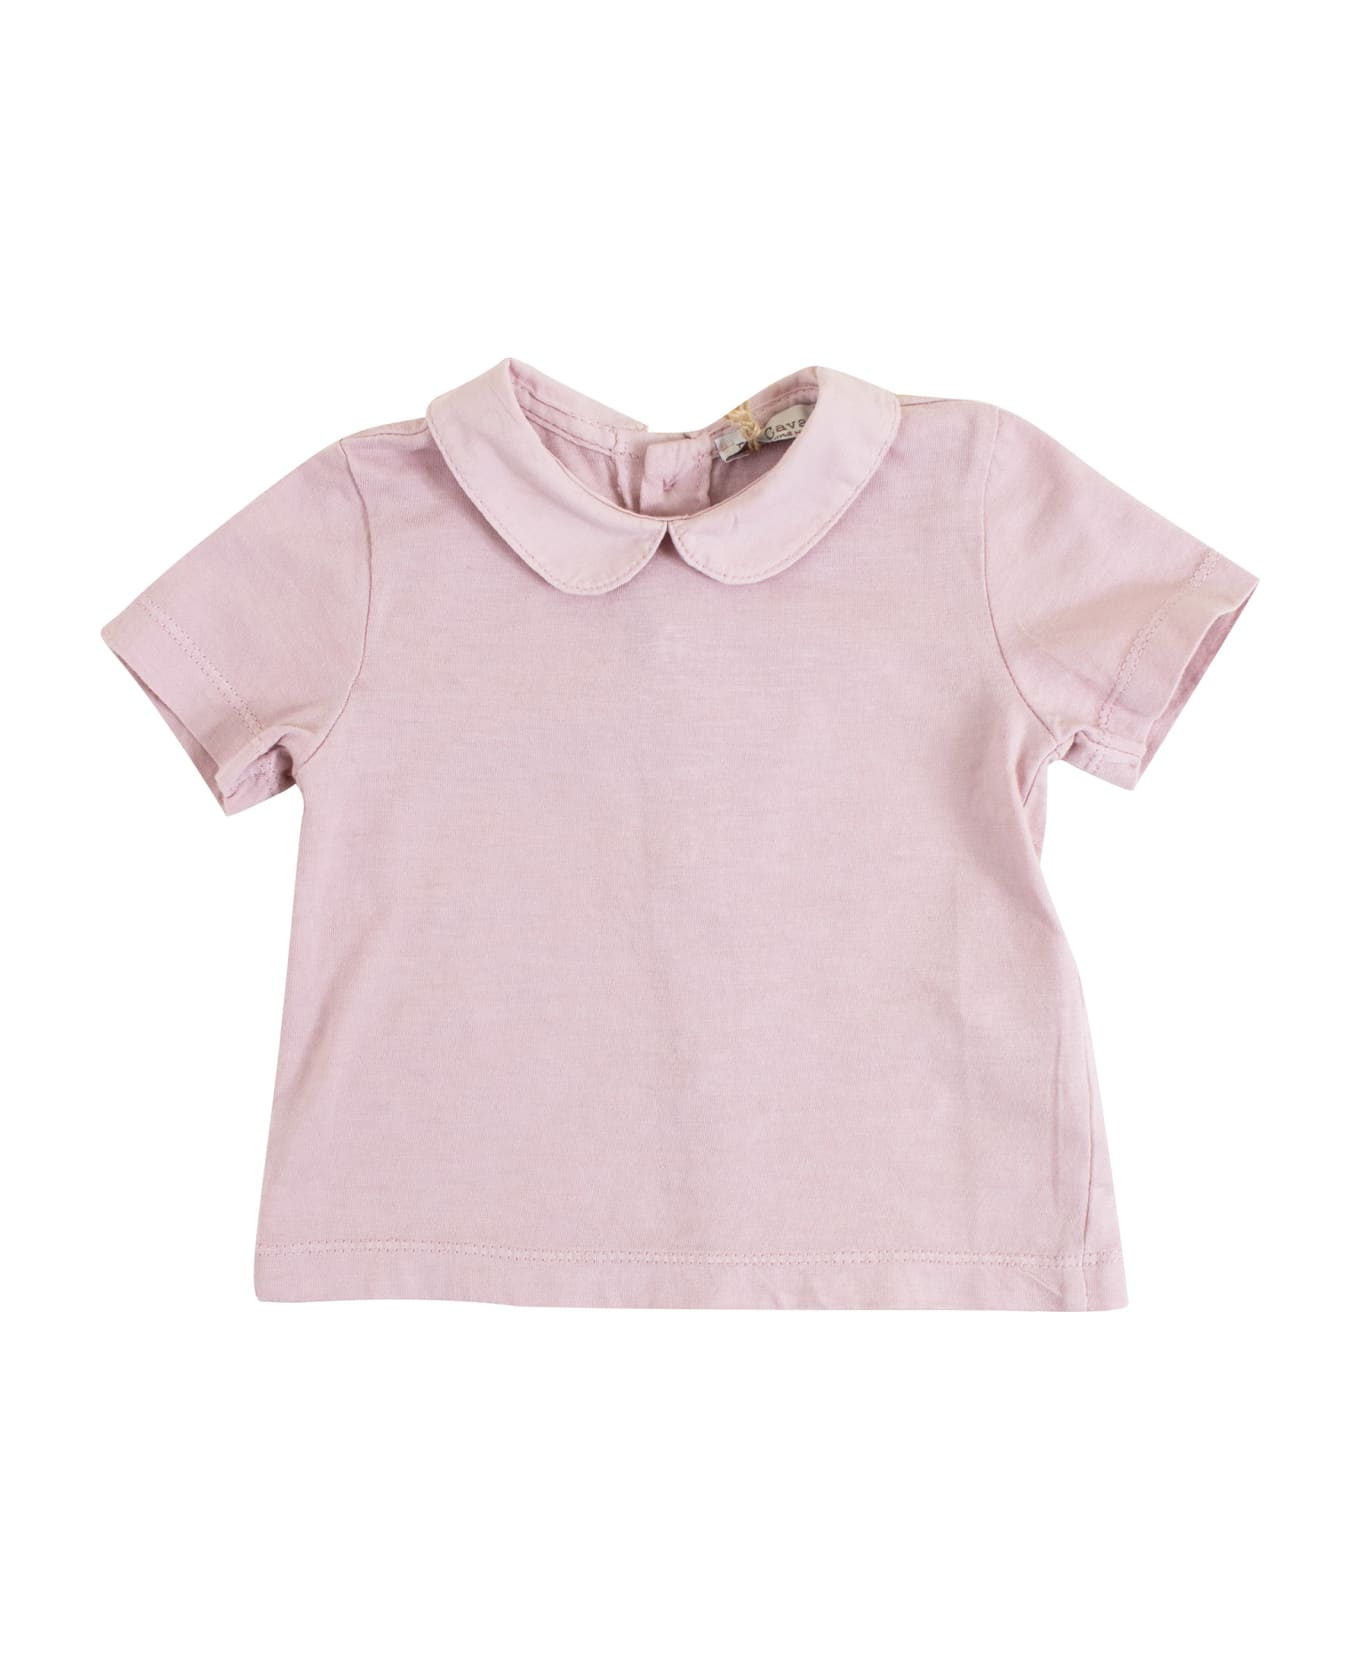 De Cavana Baby T-shirt With Collar - Pink